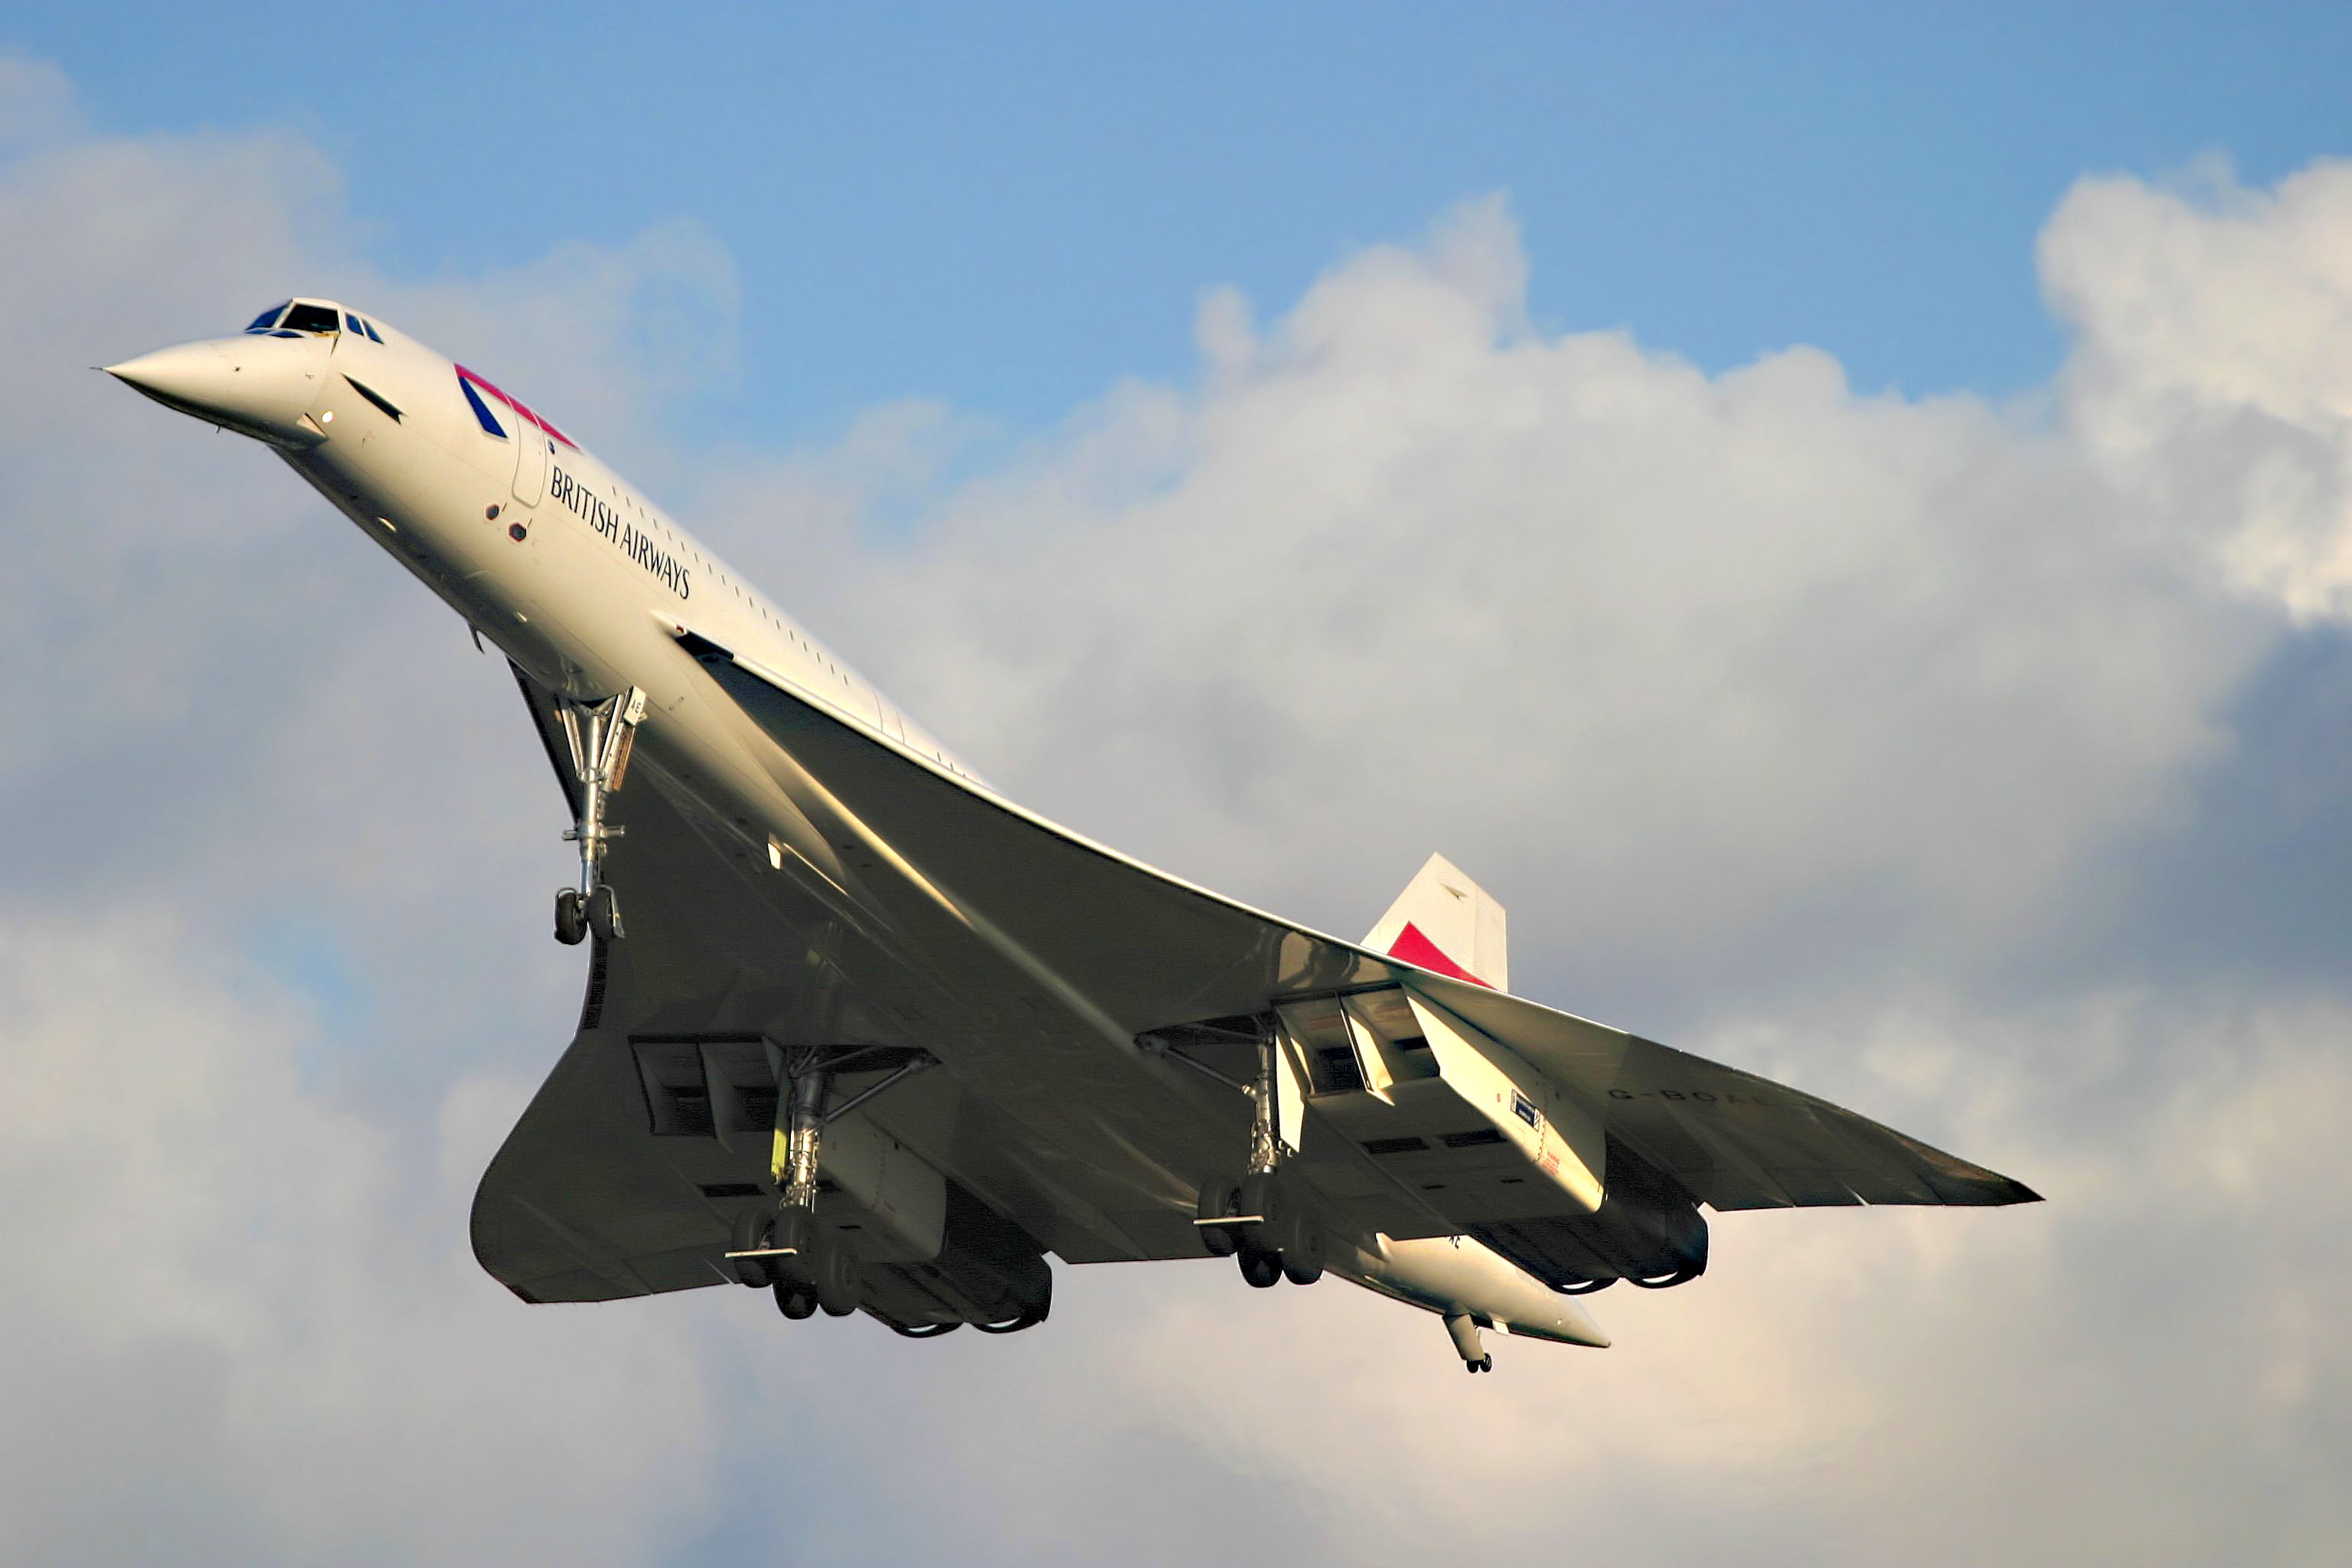 Concorde - The last day